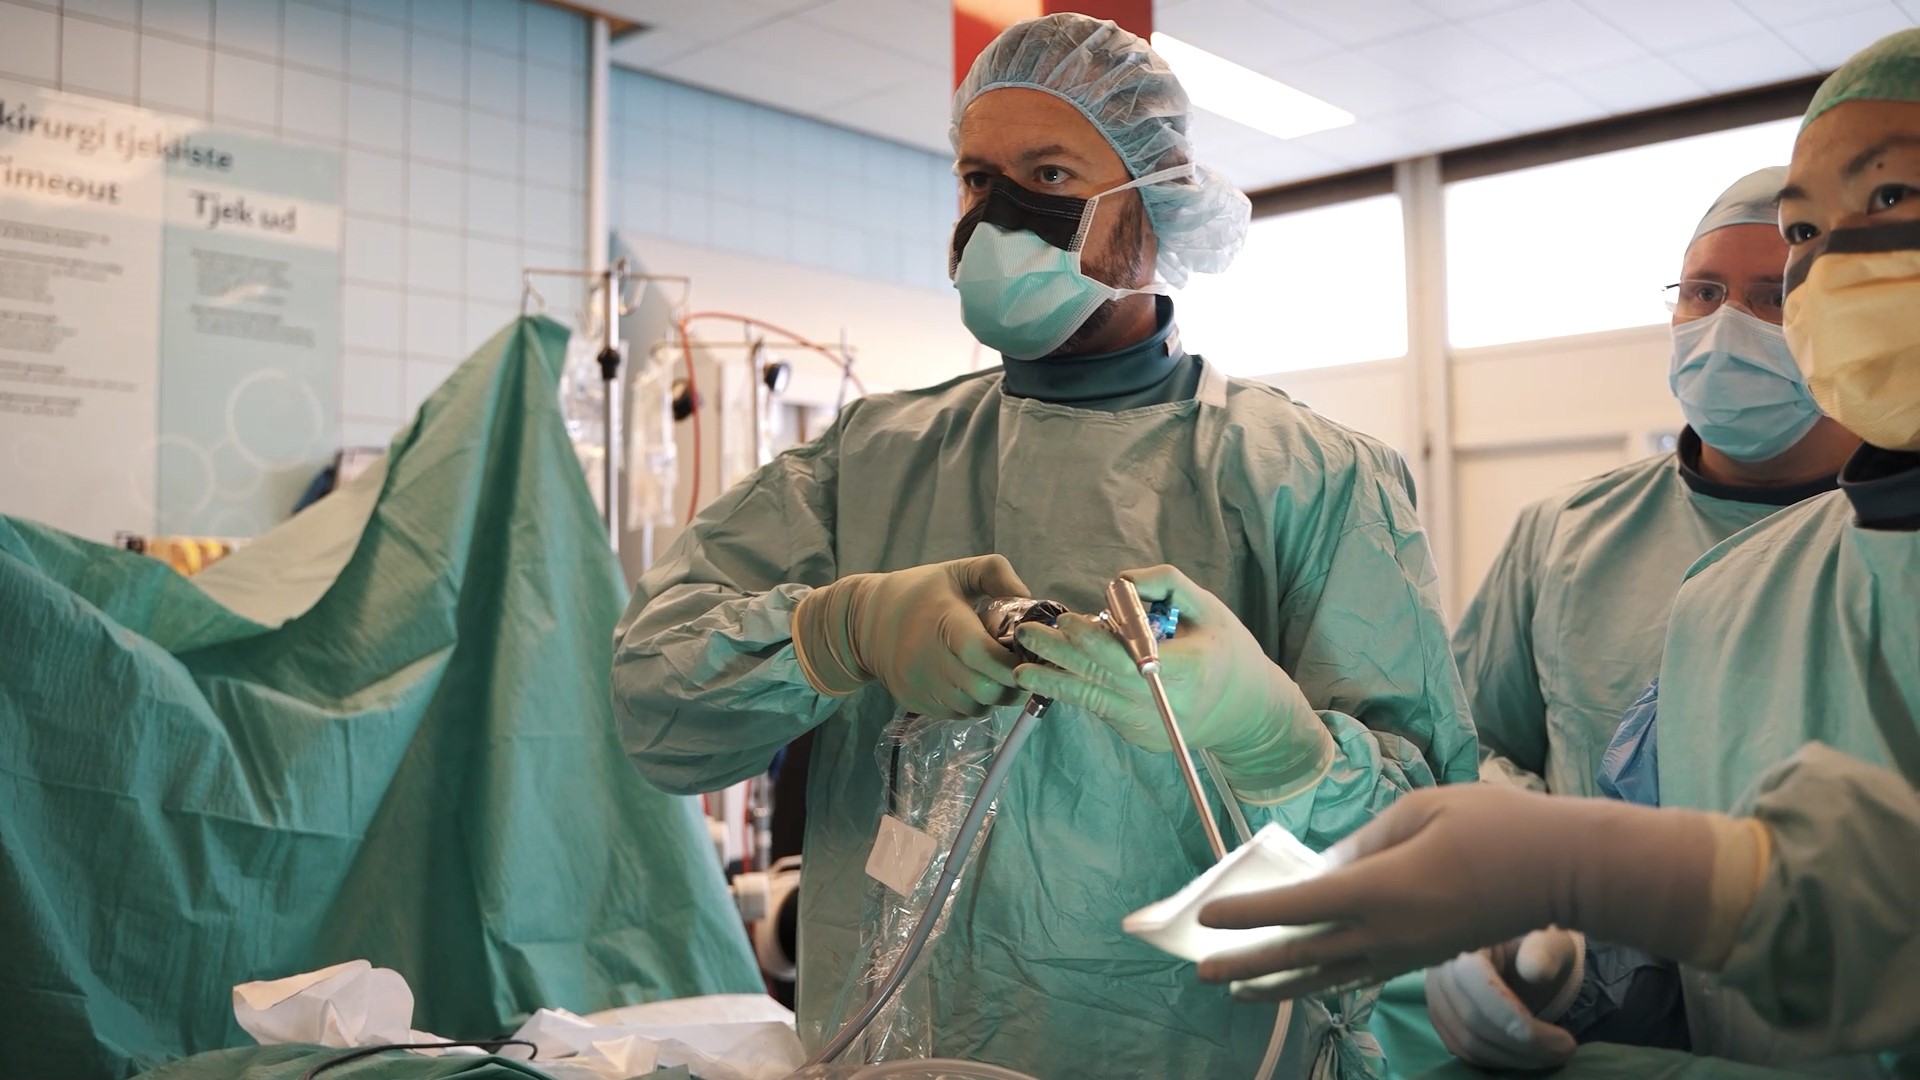 Unik operation gør livet nemmere for mange danskere - mød kirurgen her